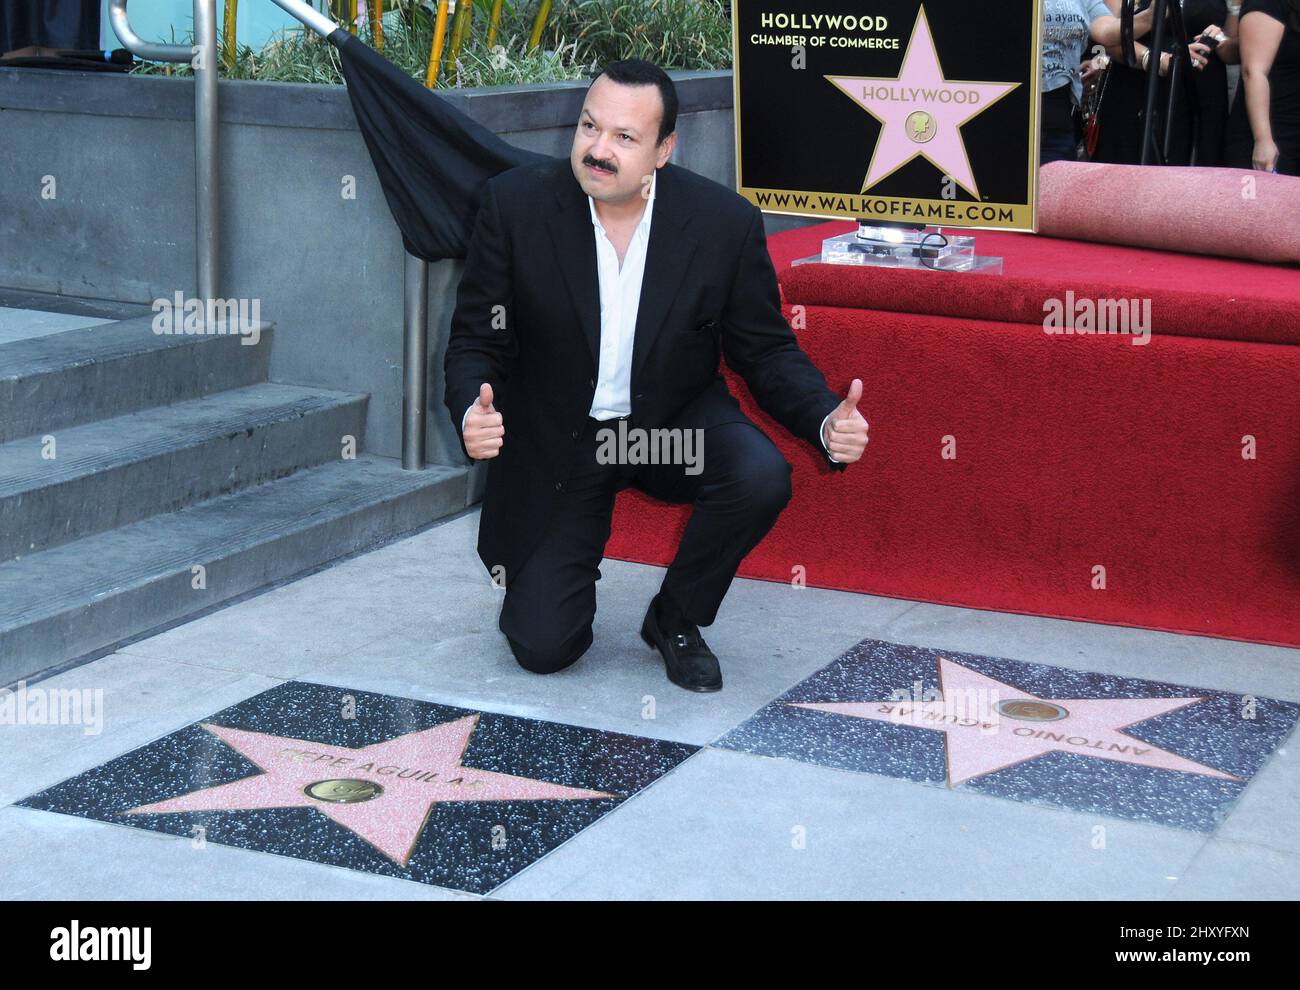 Pepe Aguilar Pepe Aguilar fue honrada con una estrella en el Paseo de la Fama de Hollywood, que se celebra frente al Live Nation Building Foto de stock